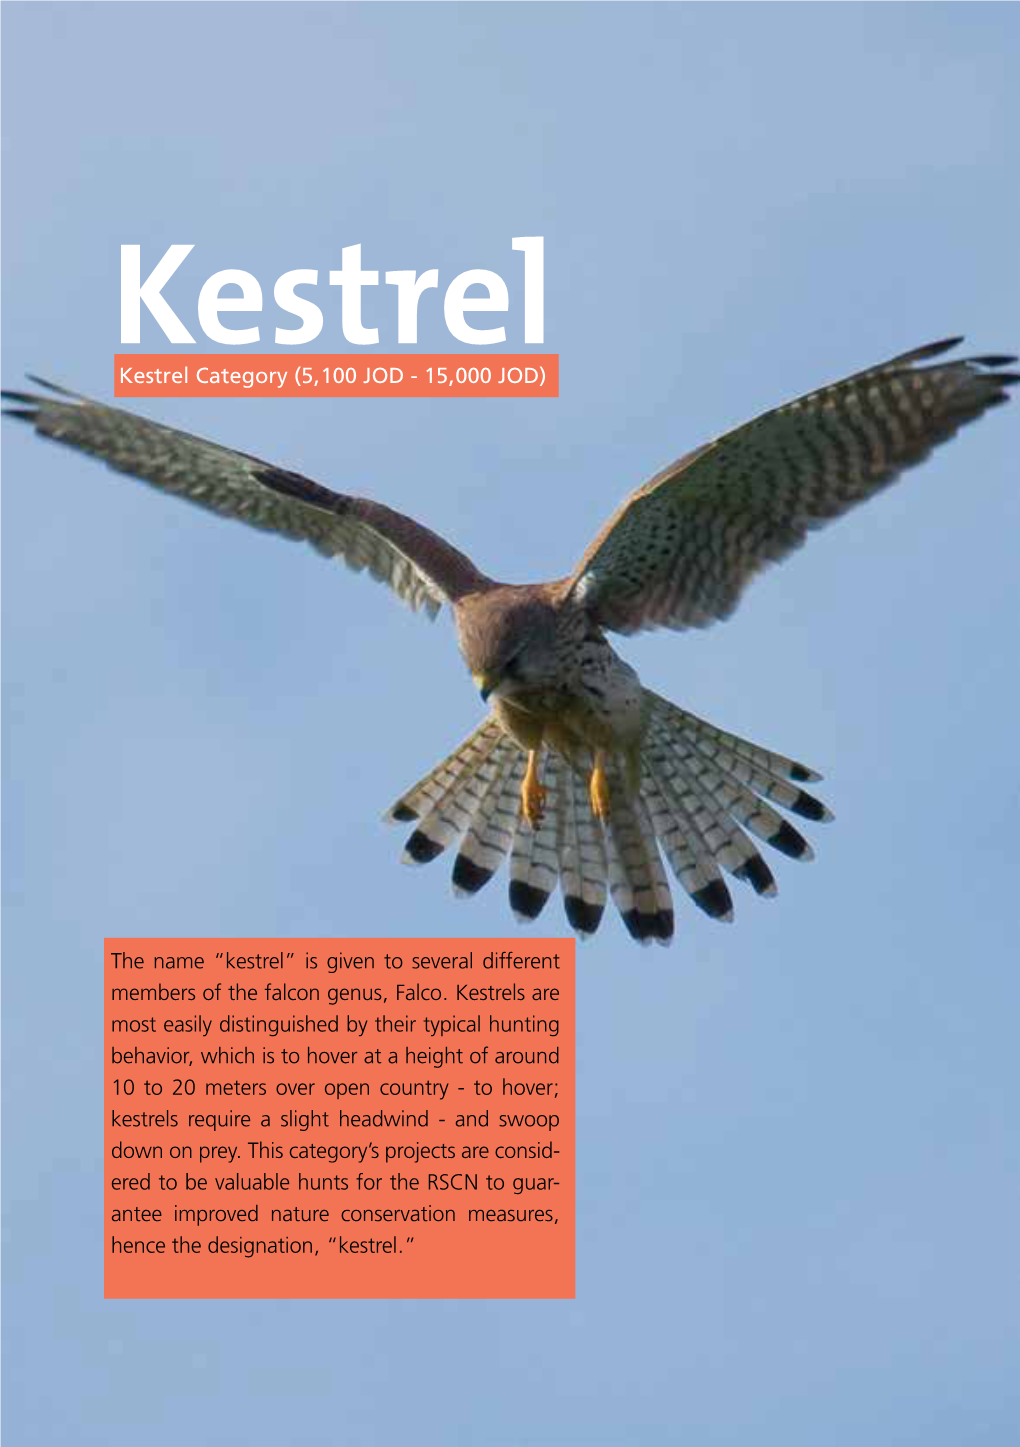 Kestrel Kestrel Category (5,100 JOD - 15,000 JOD)